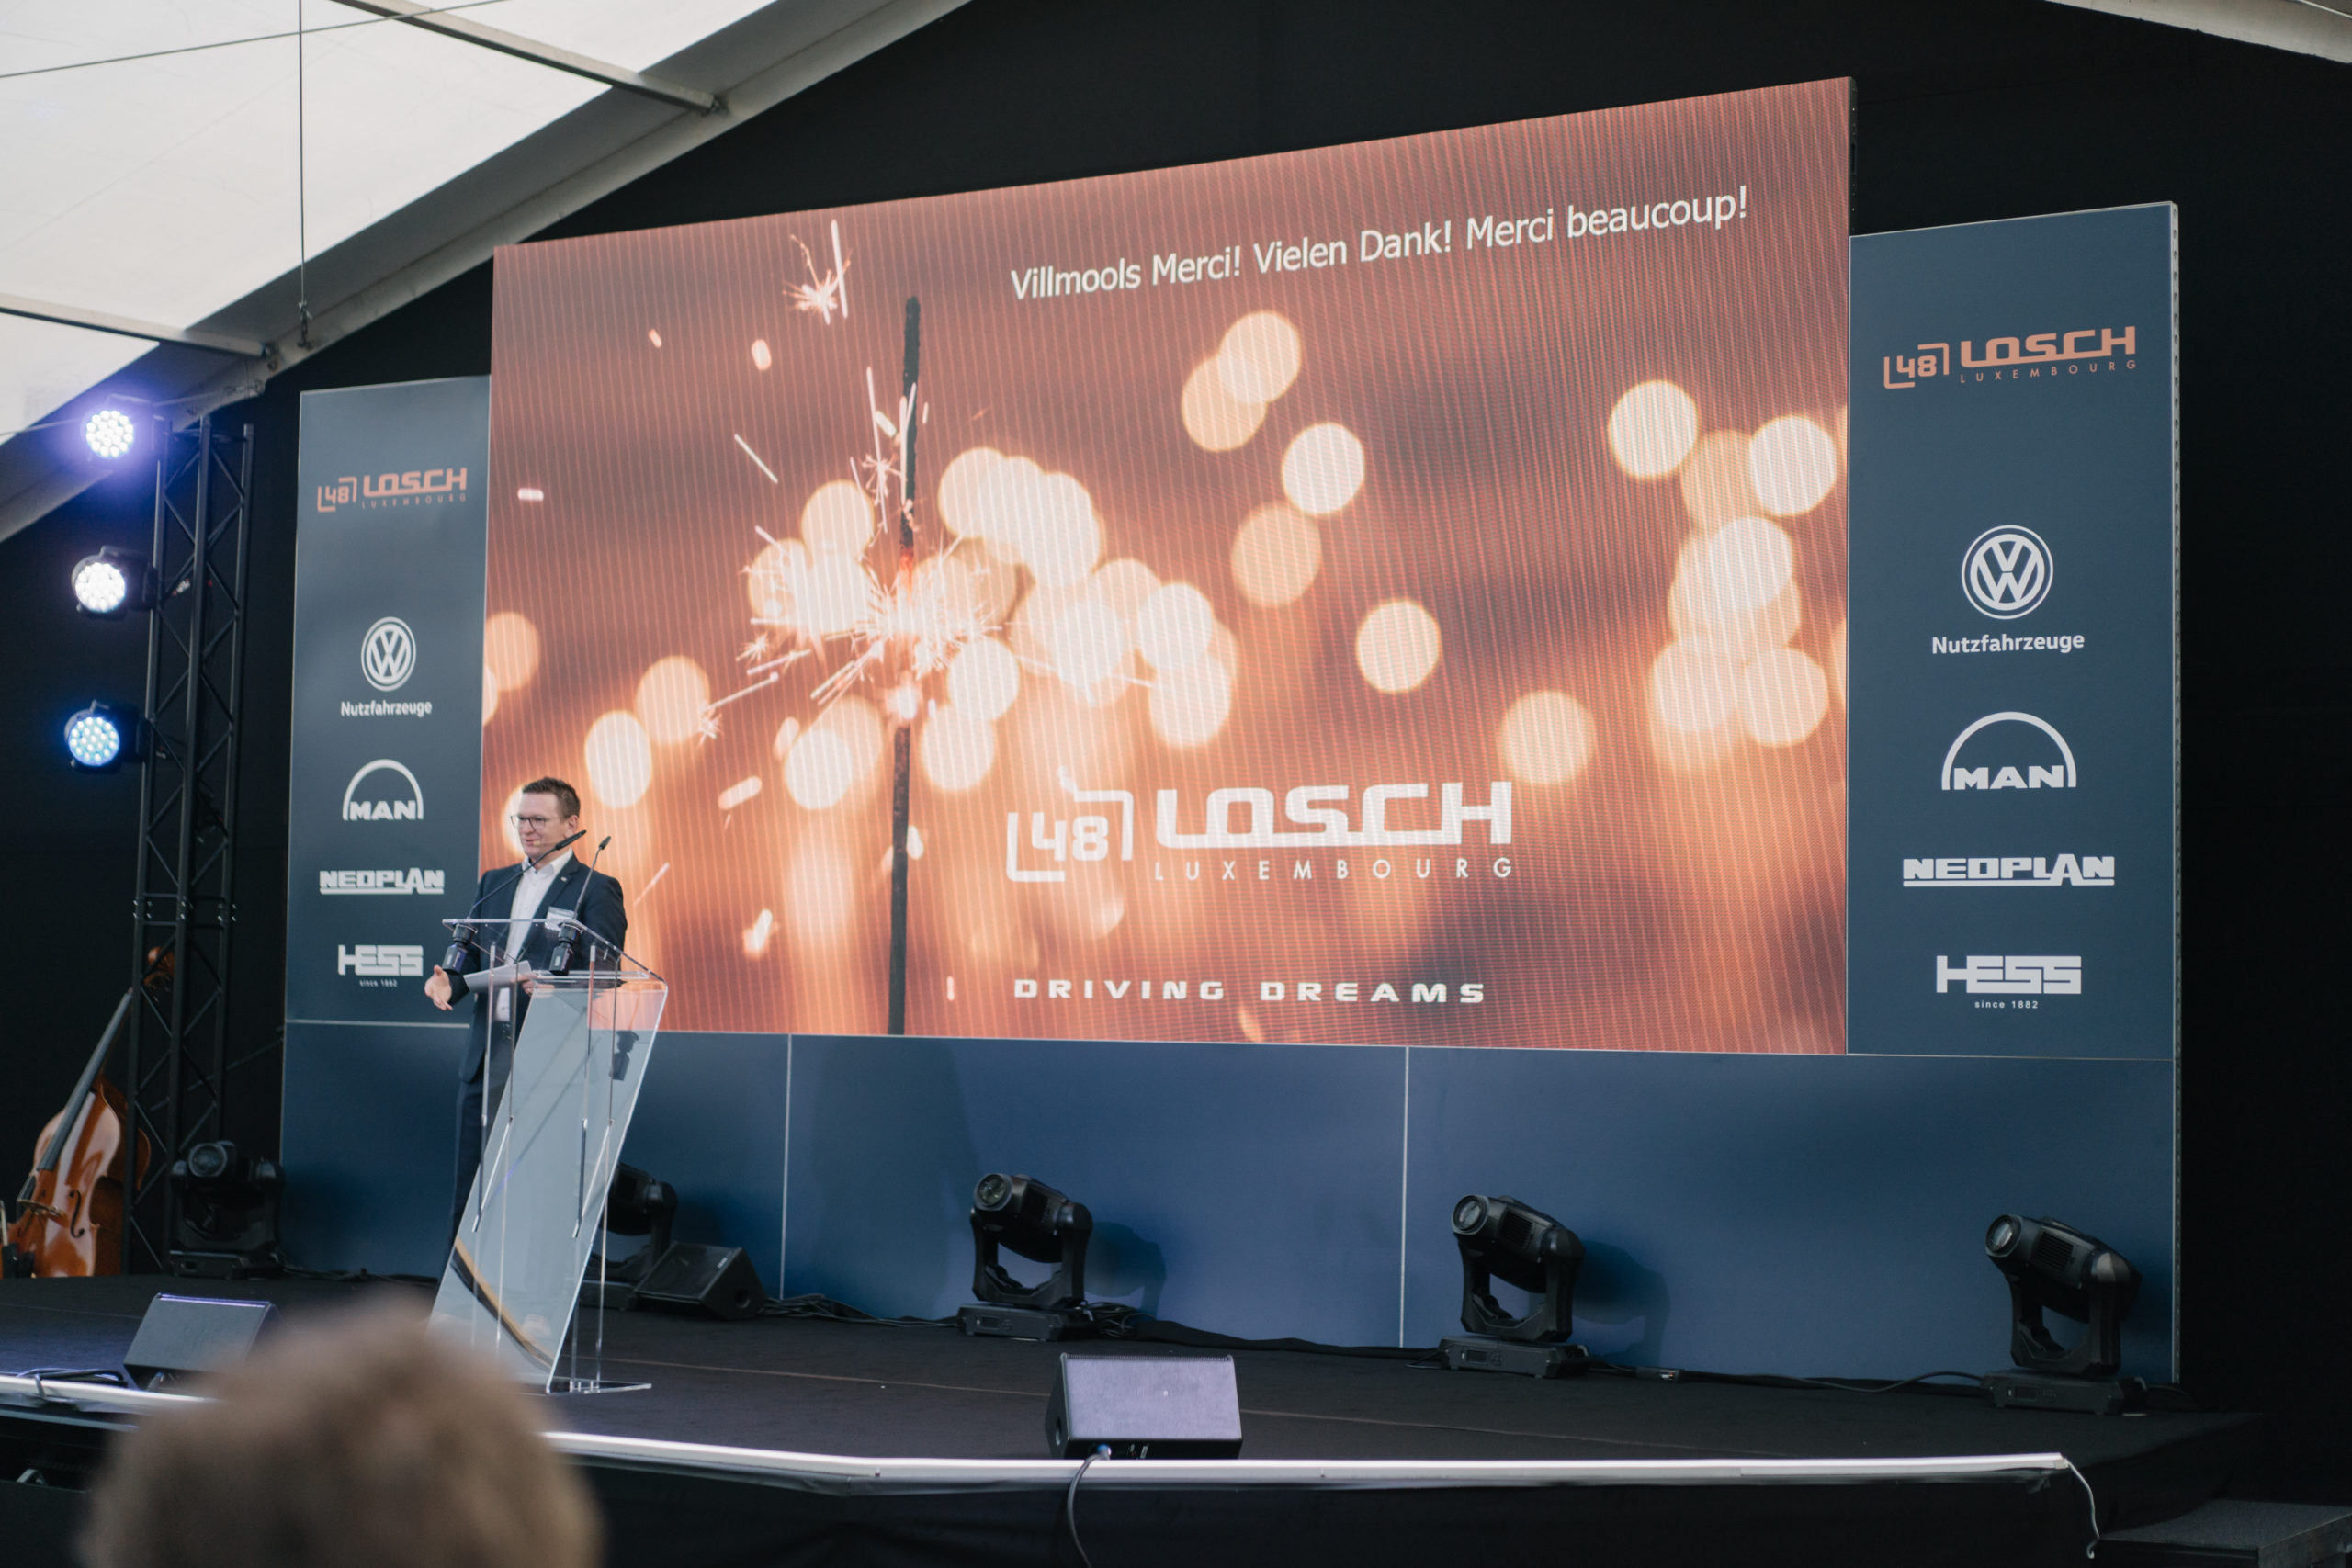 Shine a light agence évènementielle luxembourg - créateur d'expériences immersives - Inauguration concession Losch LTVB